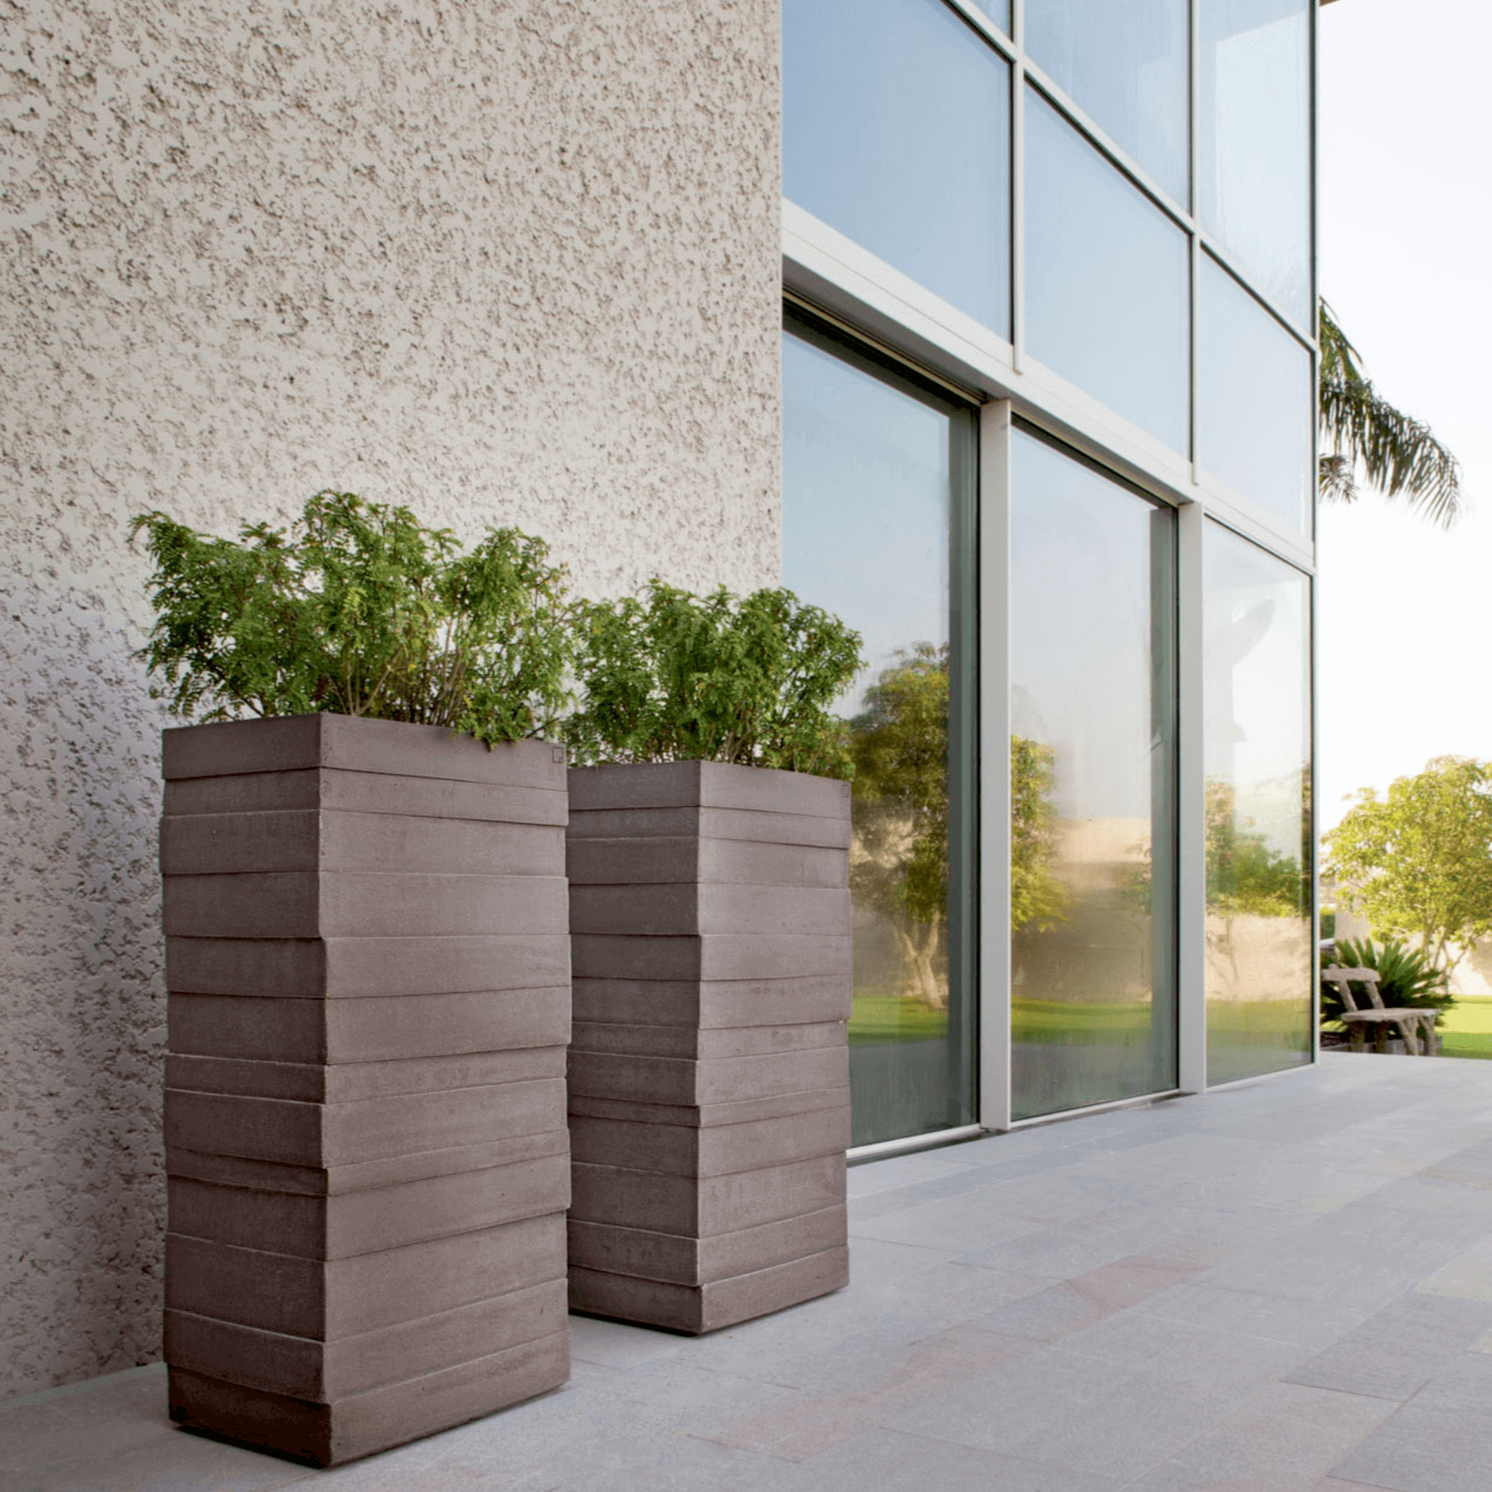 Atelier Vierkant BRL100 Gefäße stehen vor einem modernem Haus auf einer Naturstein Terrasse.